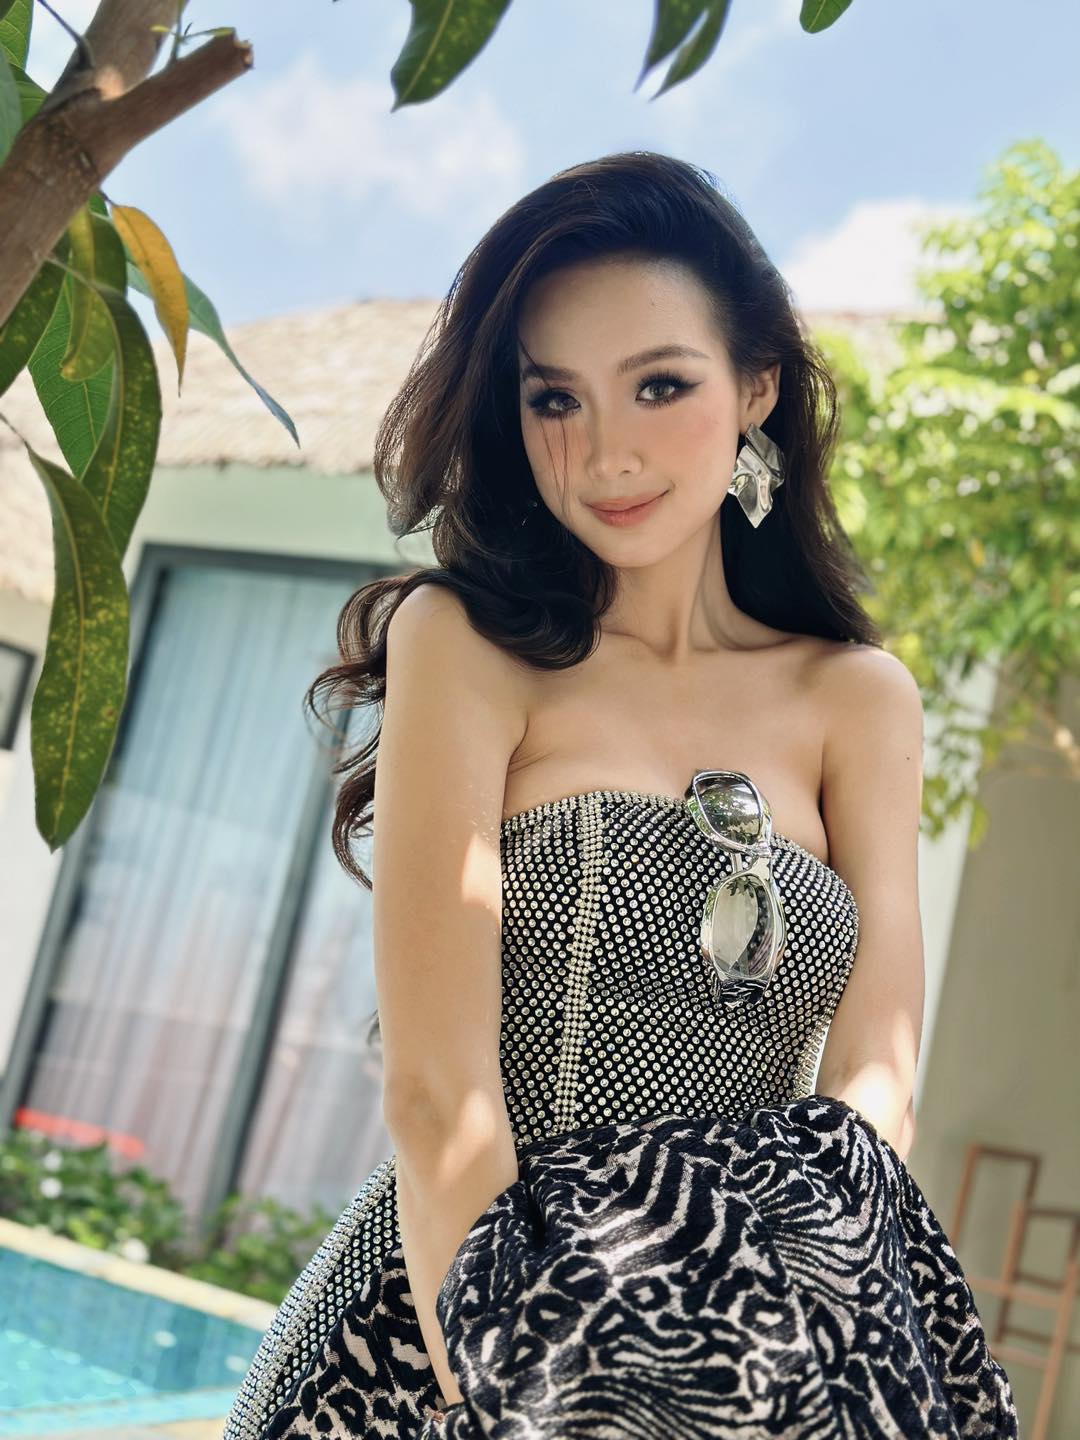 Hoa hậu Bảo Ngọc mặc yếm mỏng manh, dùng tay giữ để không rơi vào tình huống khó xử - 1